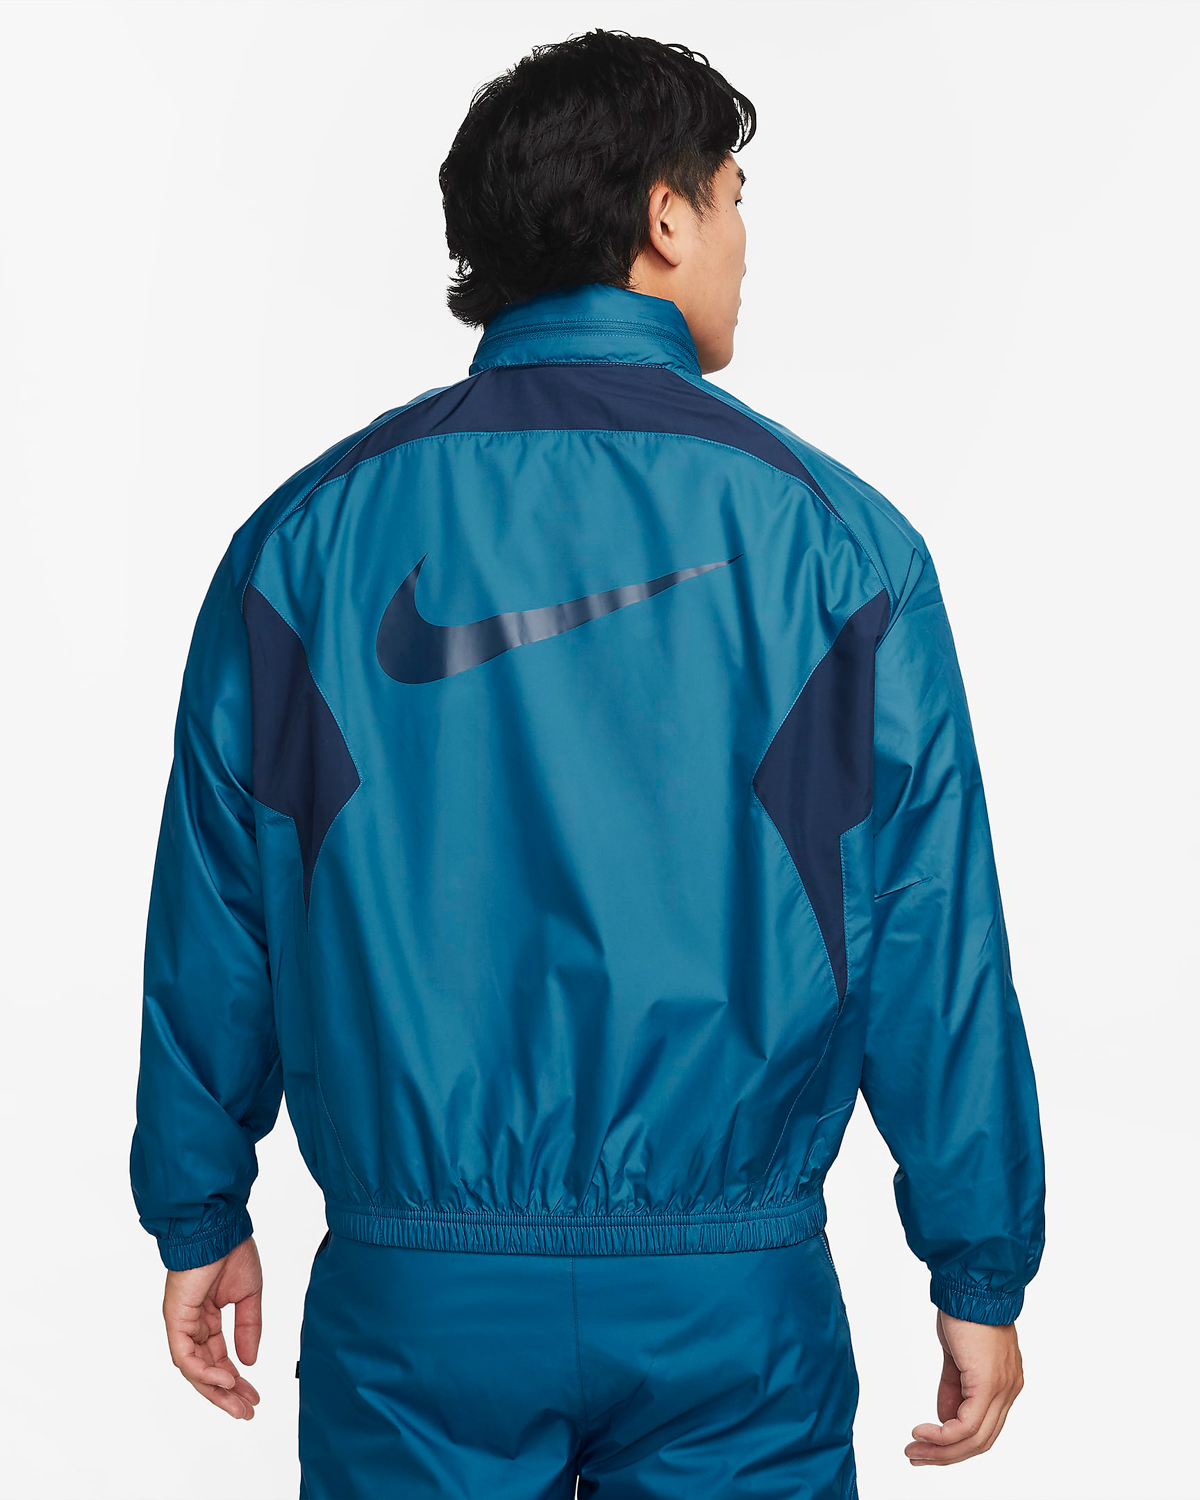 Nike-Repel-Lightweight-Soccer-Jacket-Industrial-Blue-Midnight-Navy-2